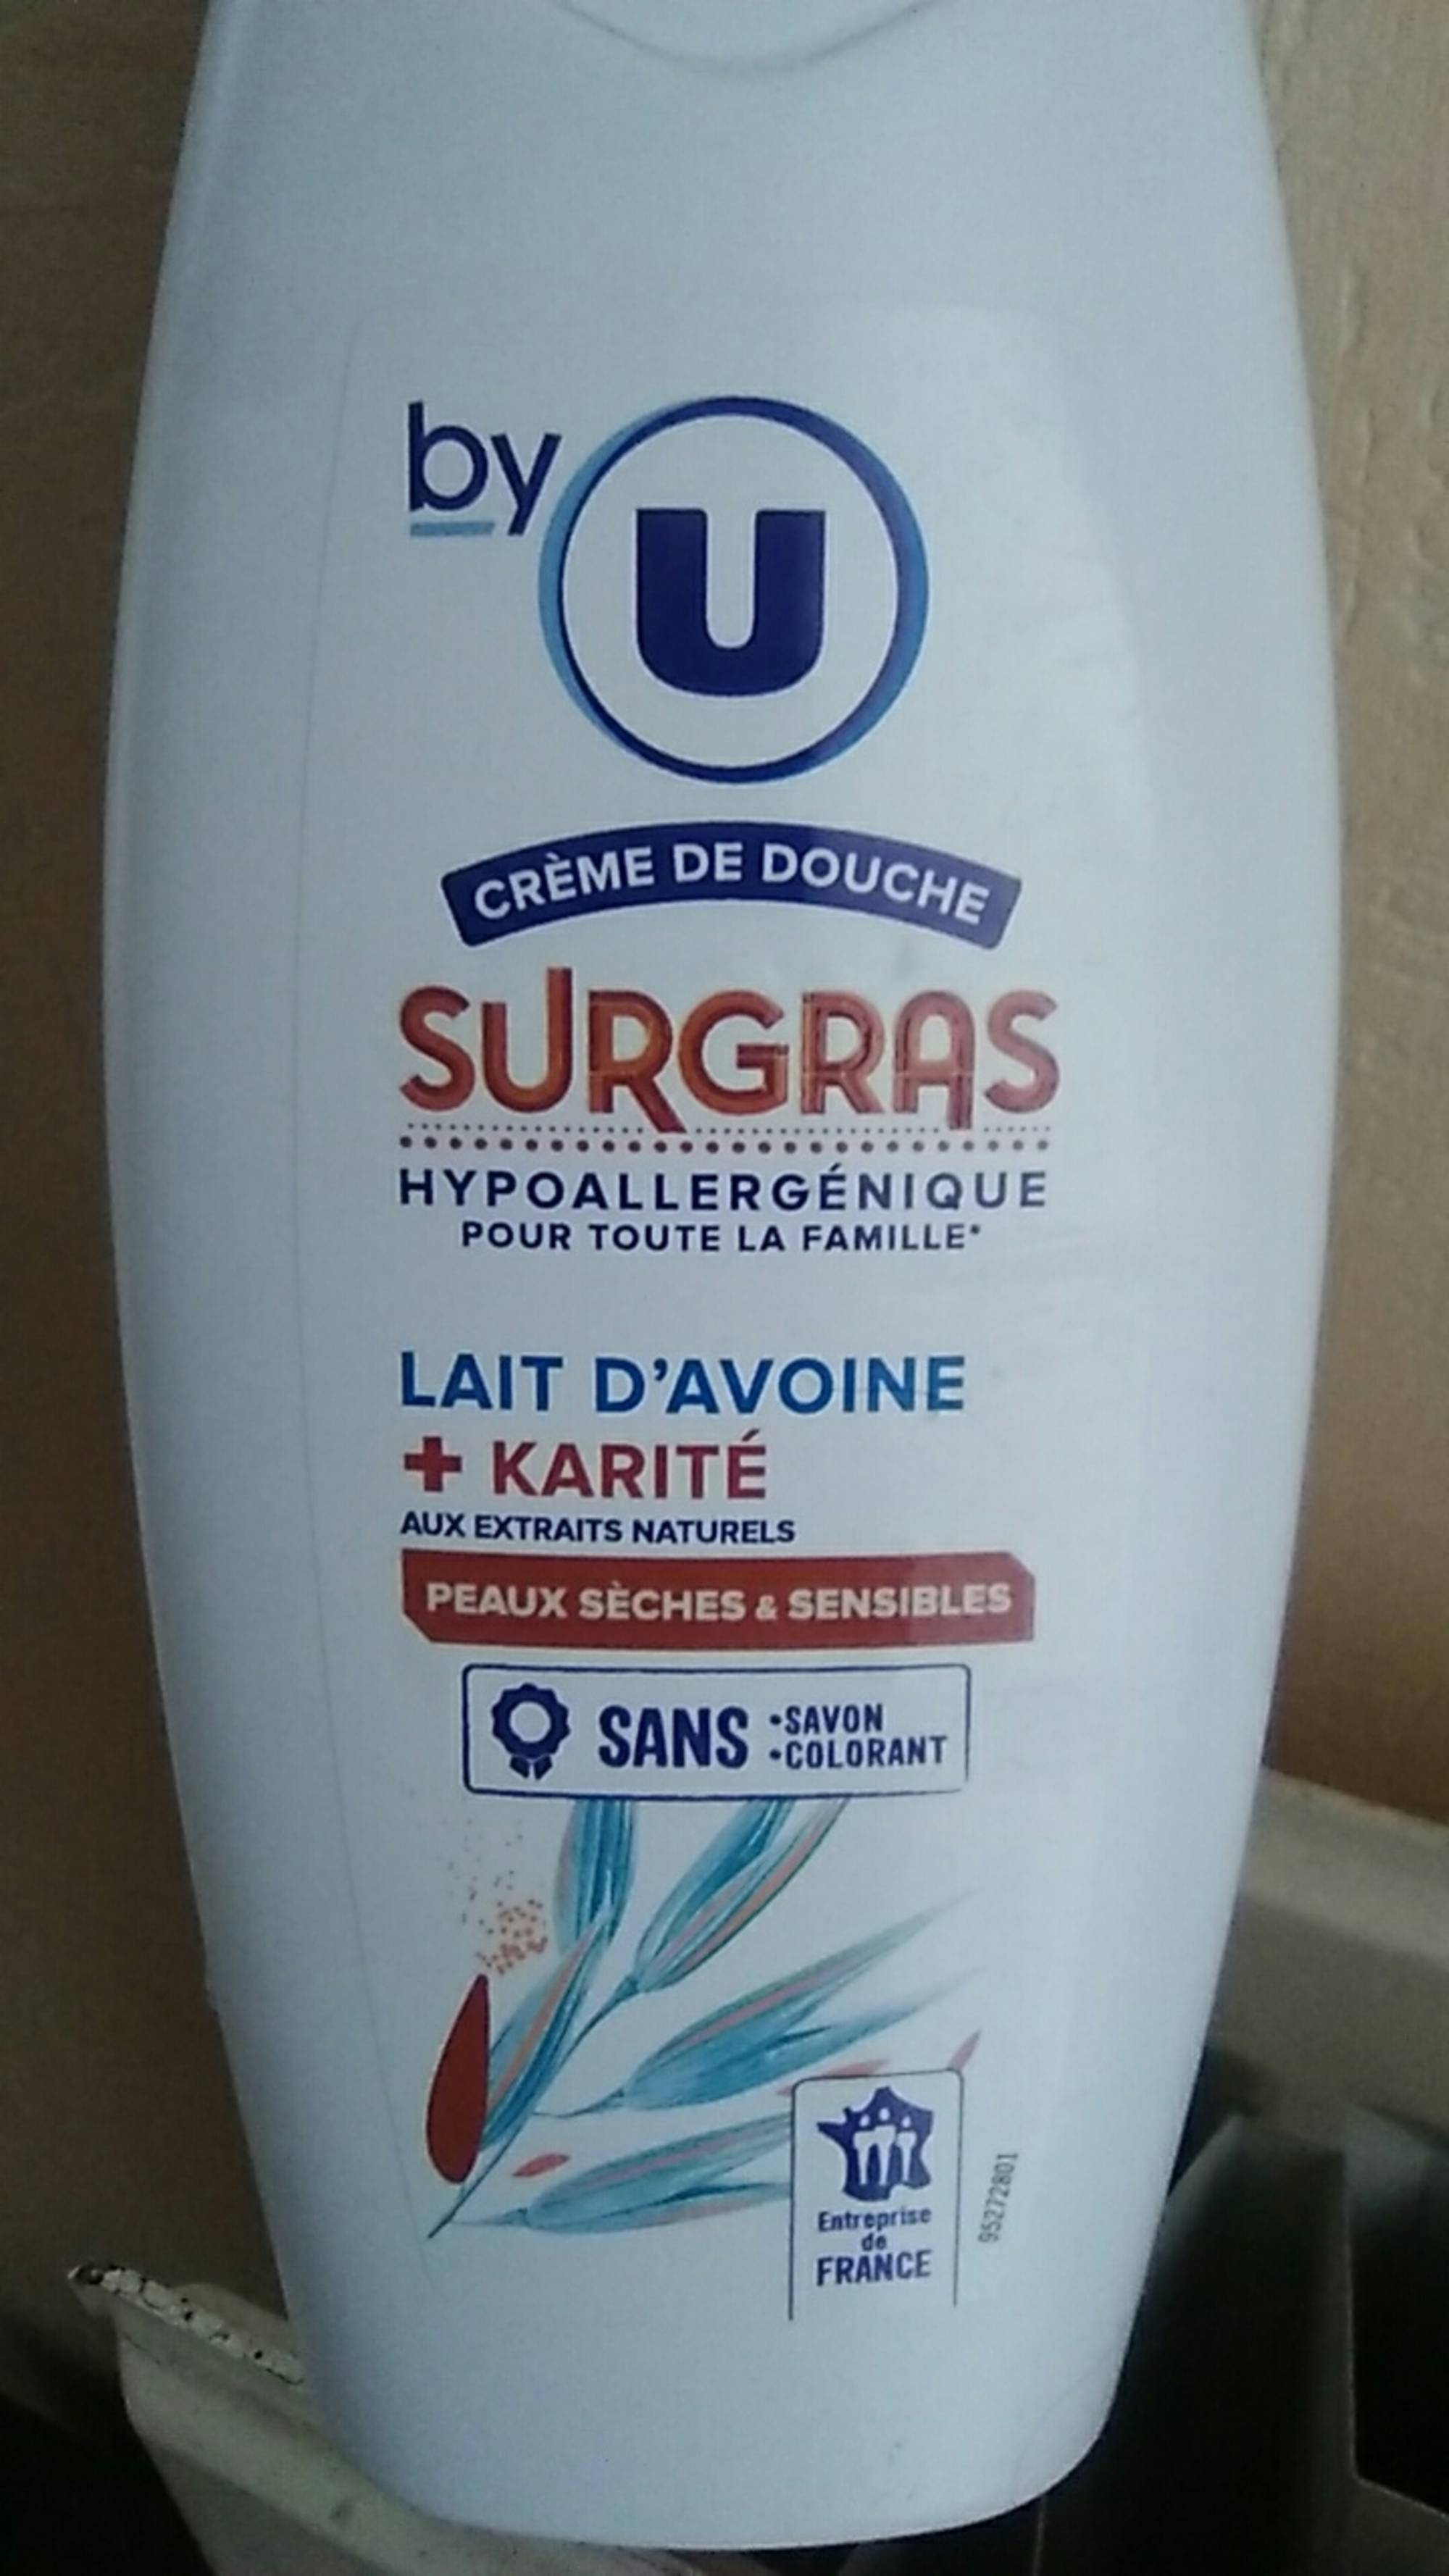 BY U - Crème de douche - Surgras hypoallergénique